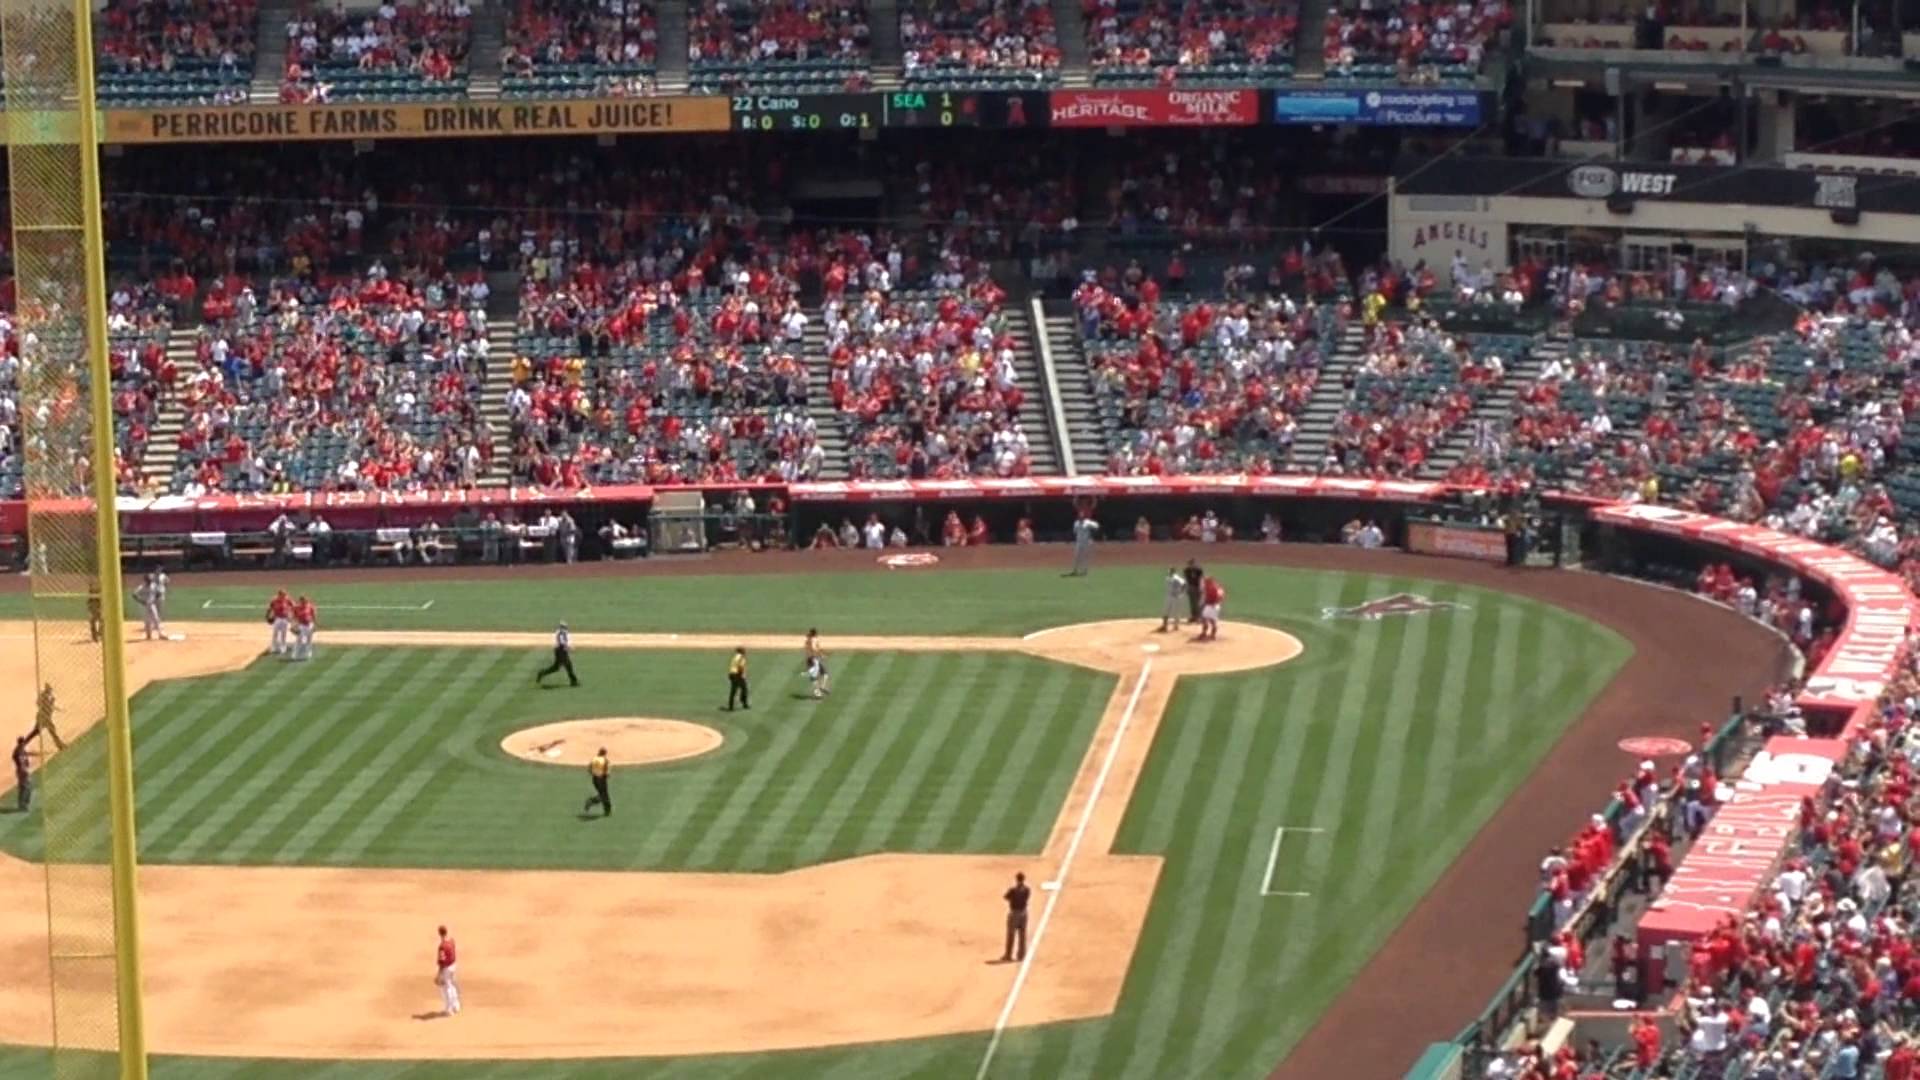 Fan runs onto field at Angels stadium & mimics a pitch